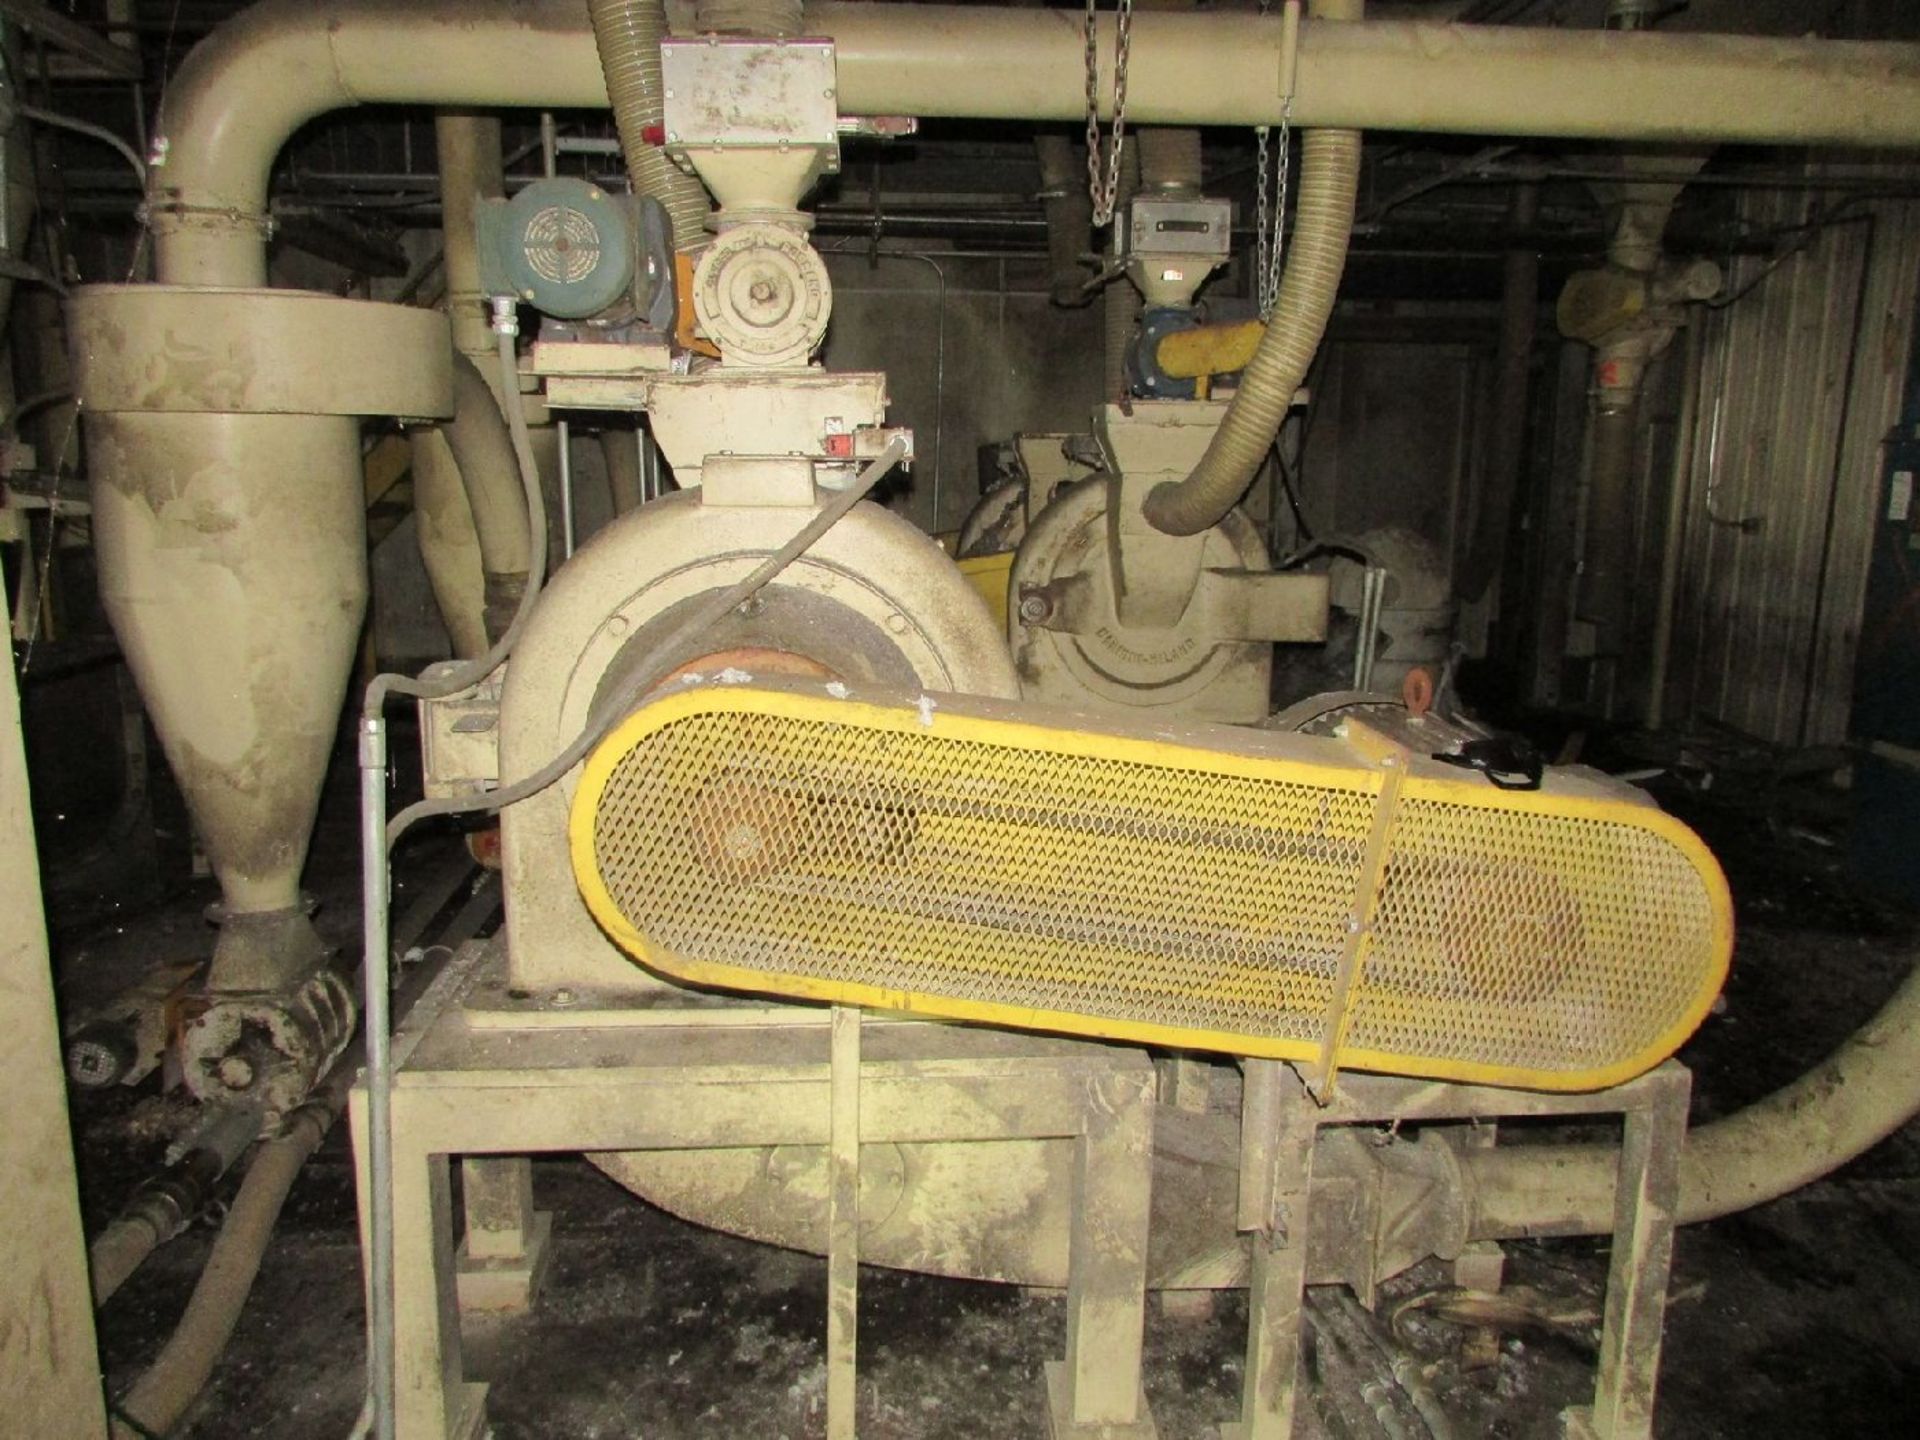 Italo Danioni-Milano Model 524 Pin Mill (Processing) - Image 6 of 6